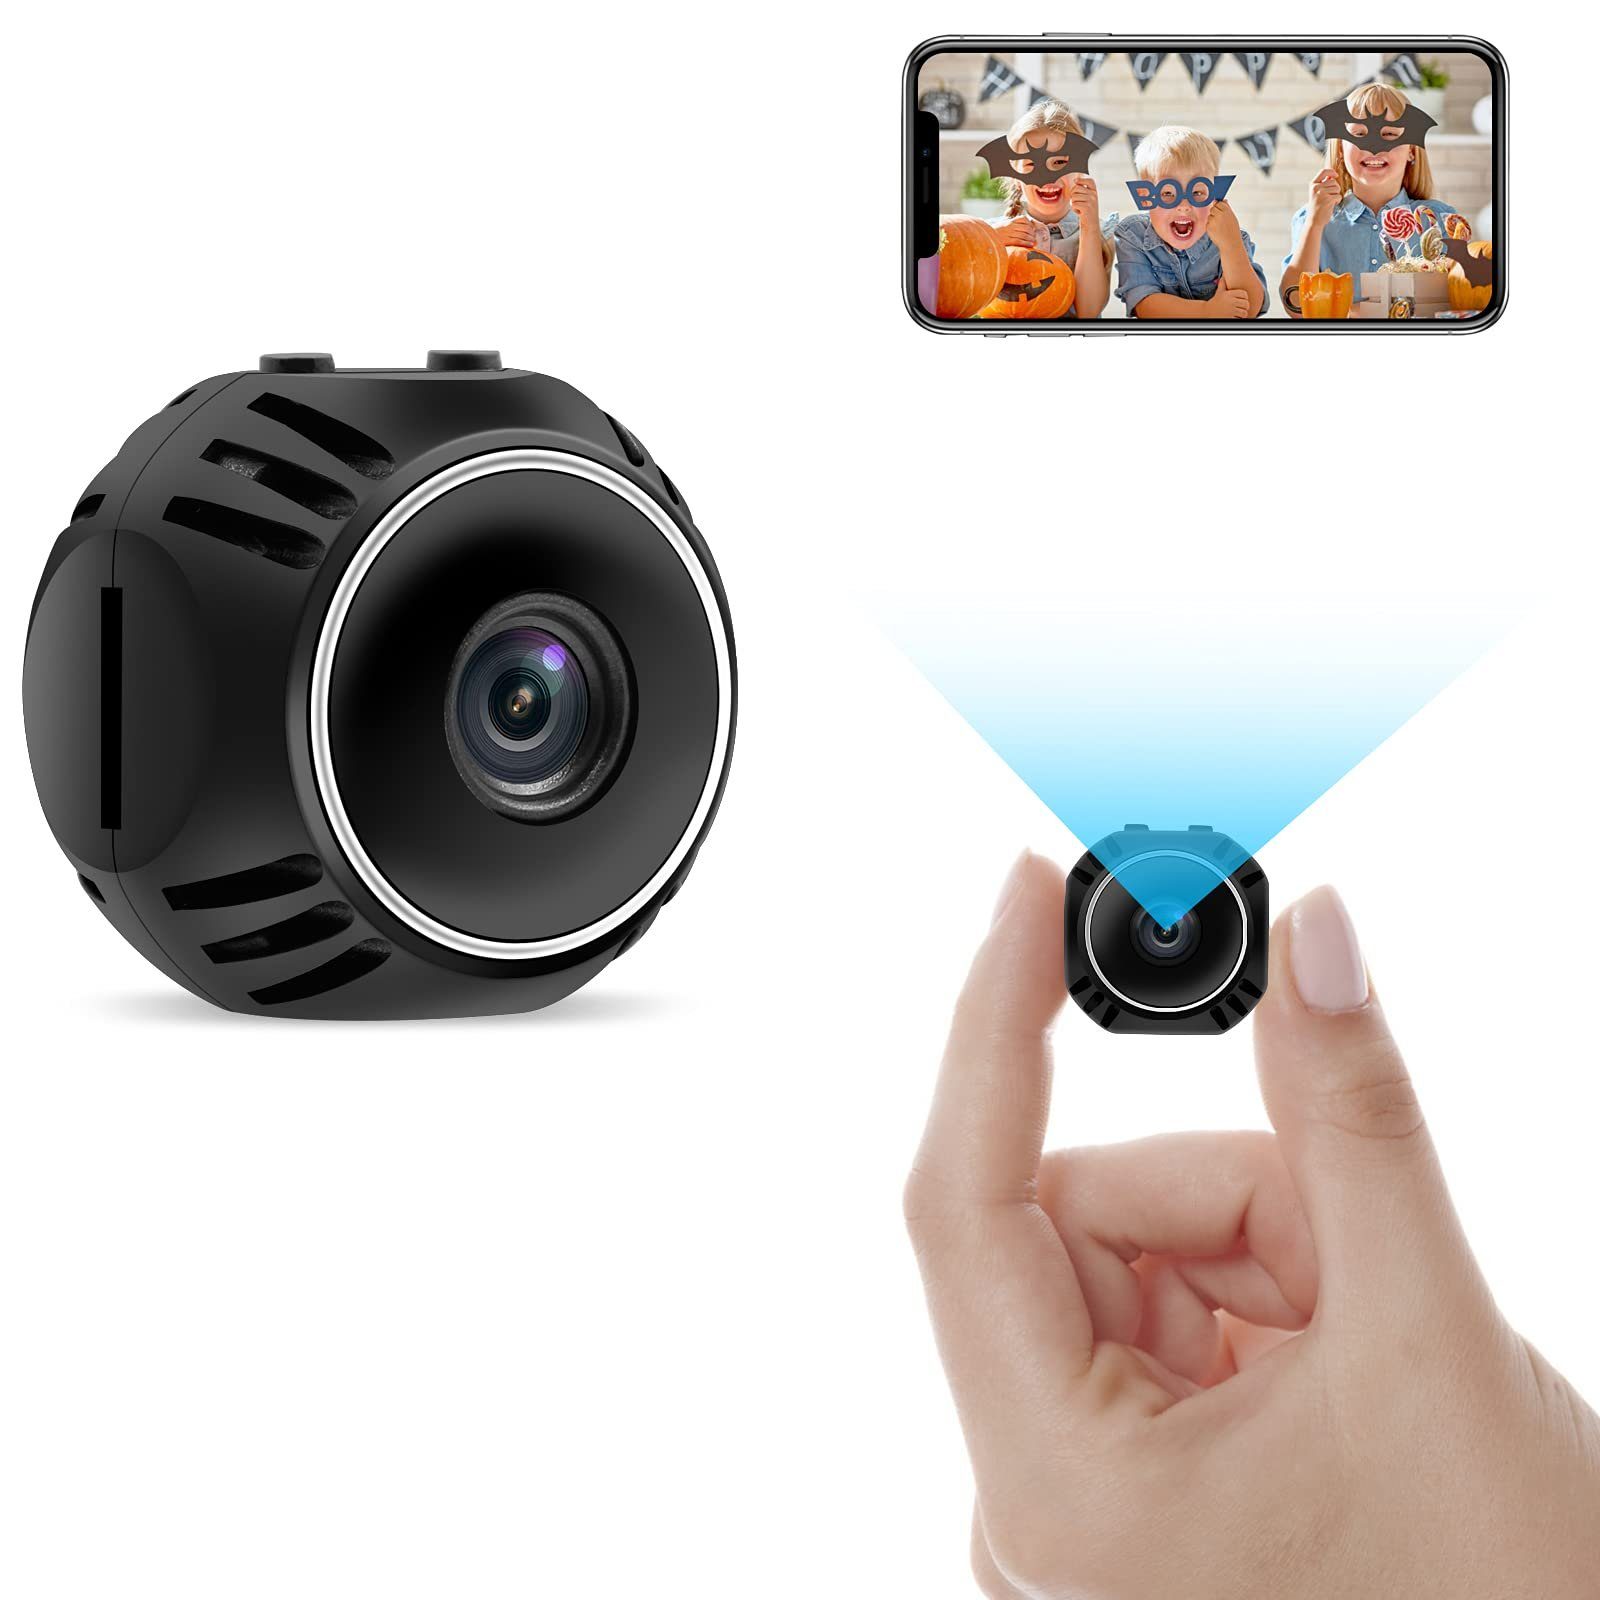 Housruse »Mini Kamera Überwachungskamera, HD WiFi Kleine Videokamera, WLAN  Tragbare Nanny Sicherheitskamera mit Bewegungsmelder Fernsicht für Innen  Aussen« Überwachungskamera online kaufen | OTTO